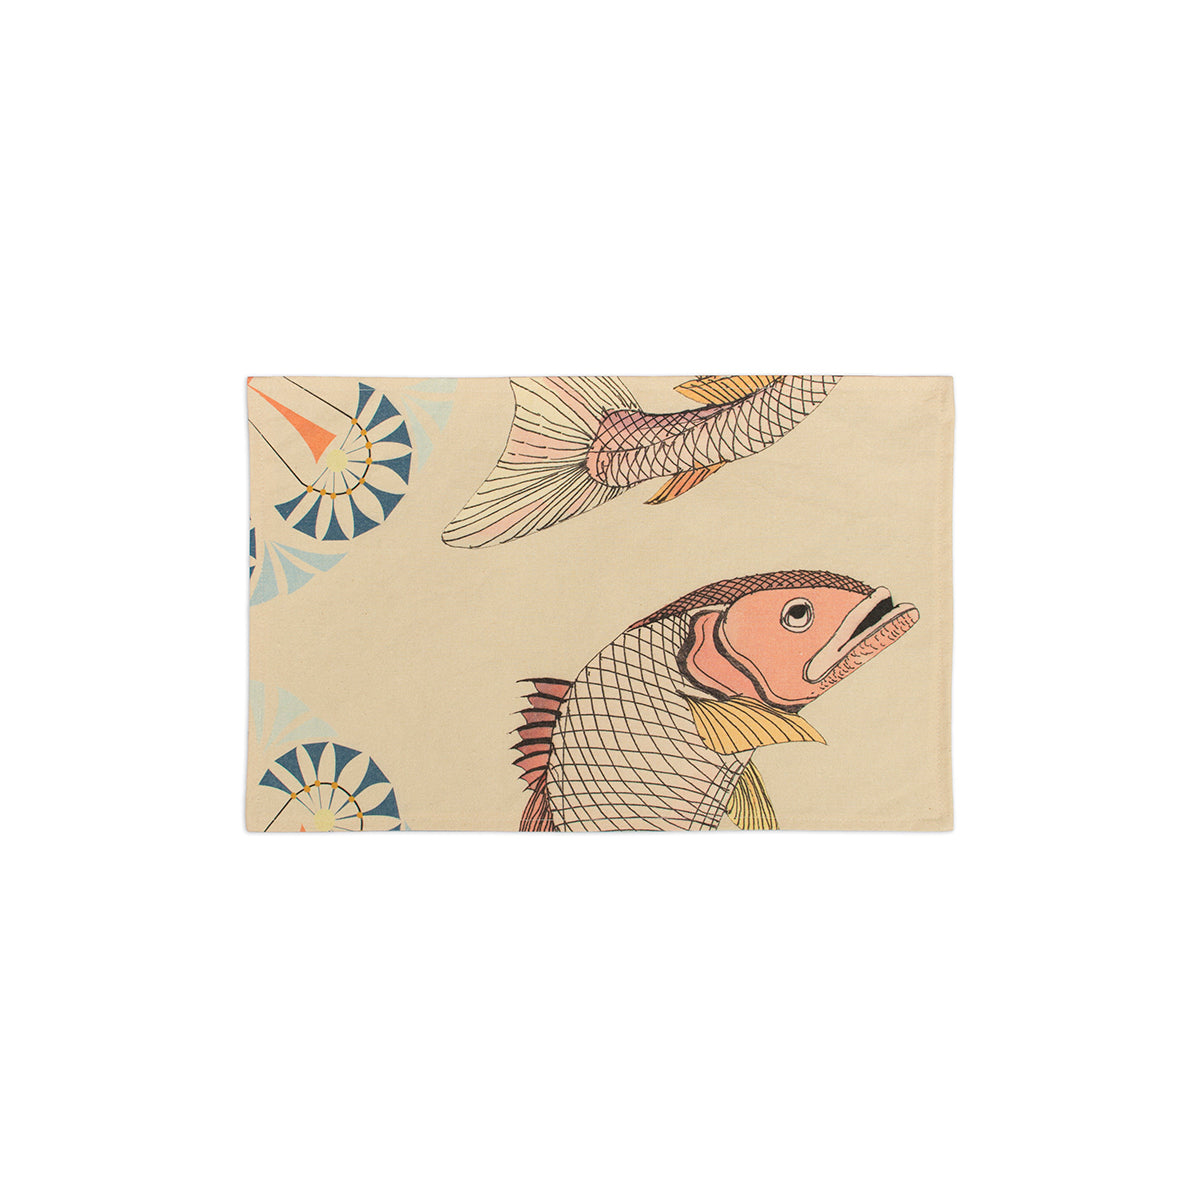 13" x 20" 100% cotton canvas placemat with unique fine line fish illustration pattern